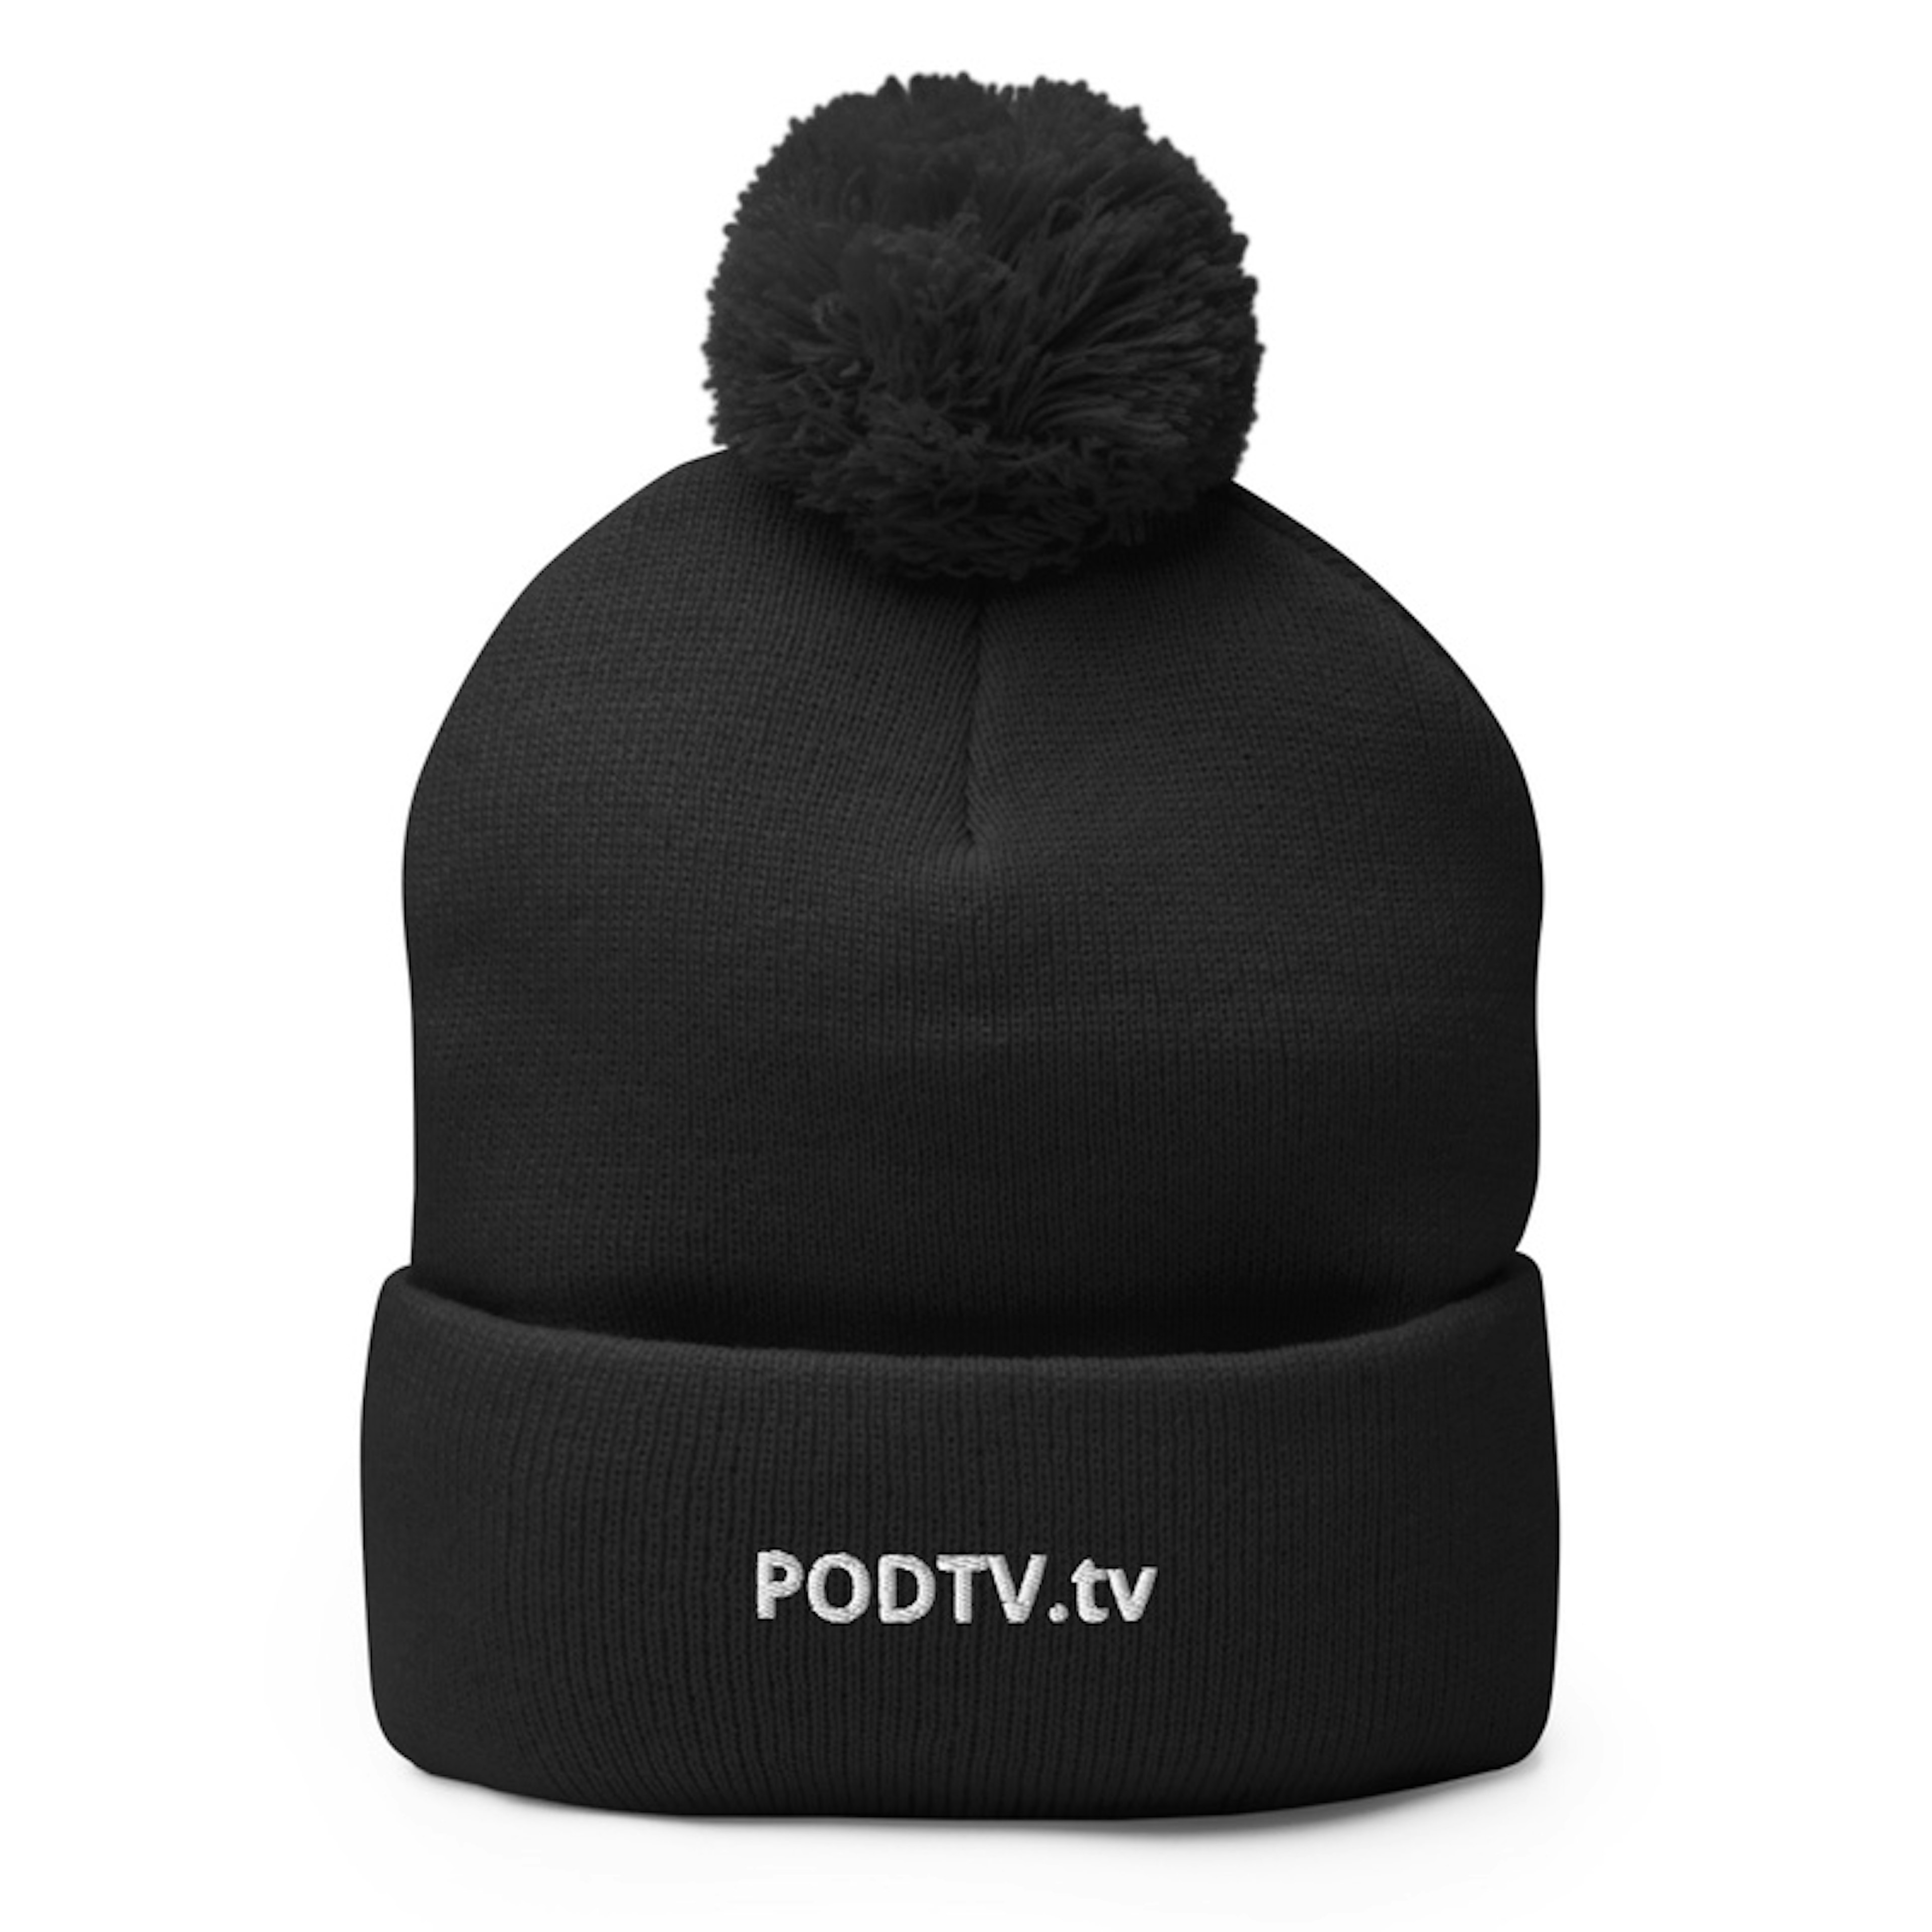 PODTV winter hat